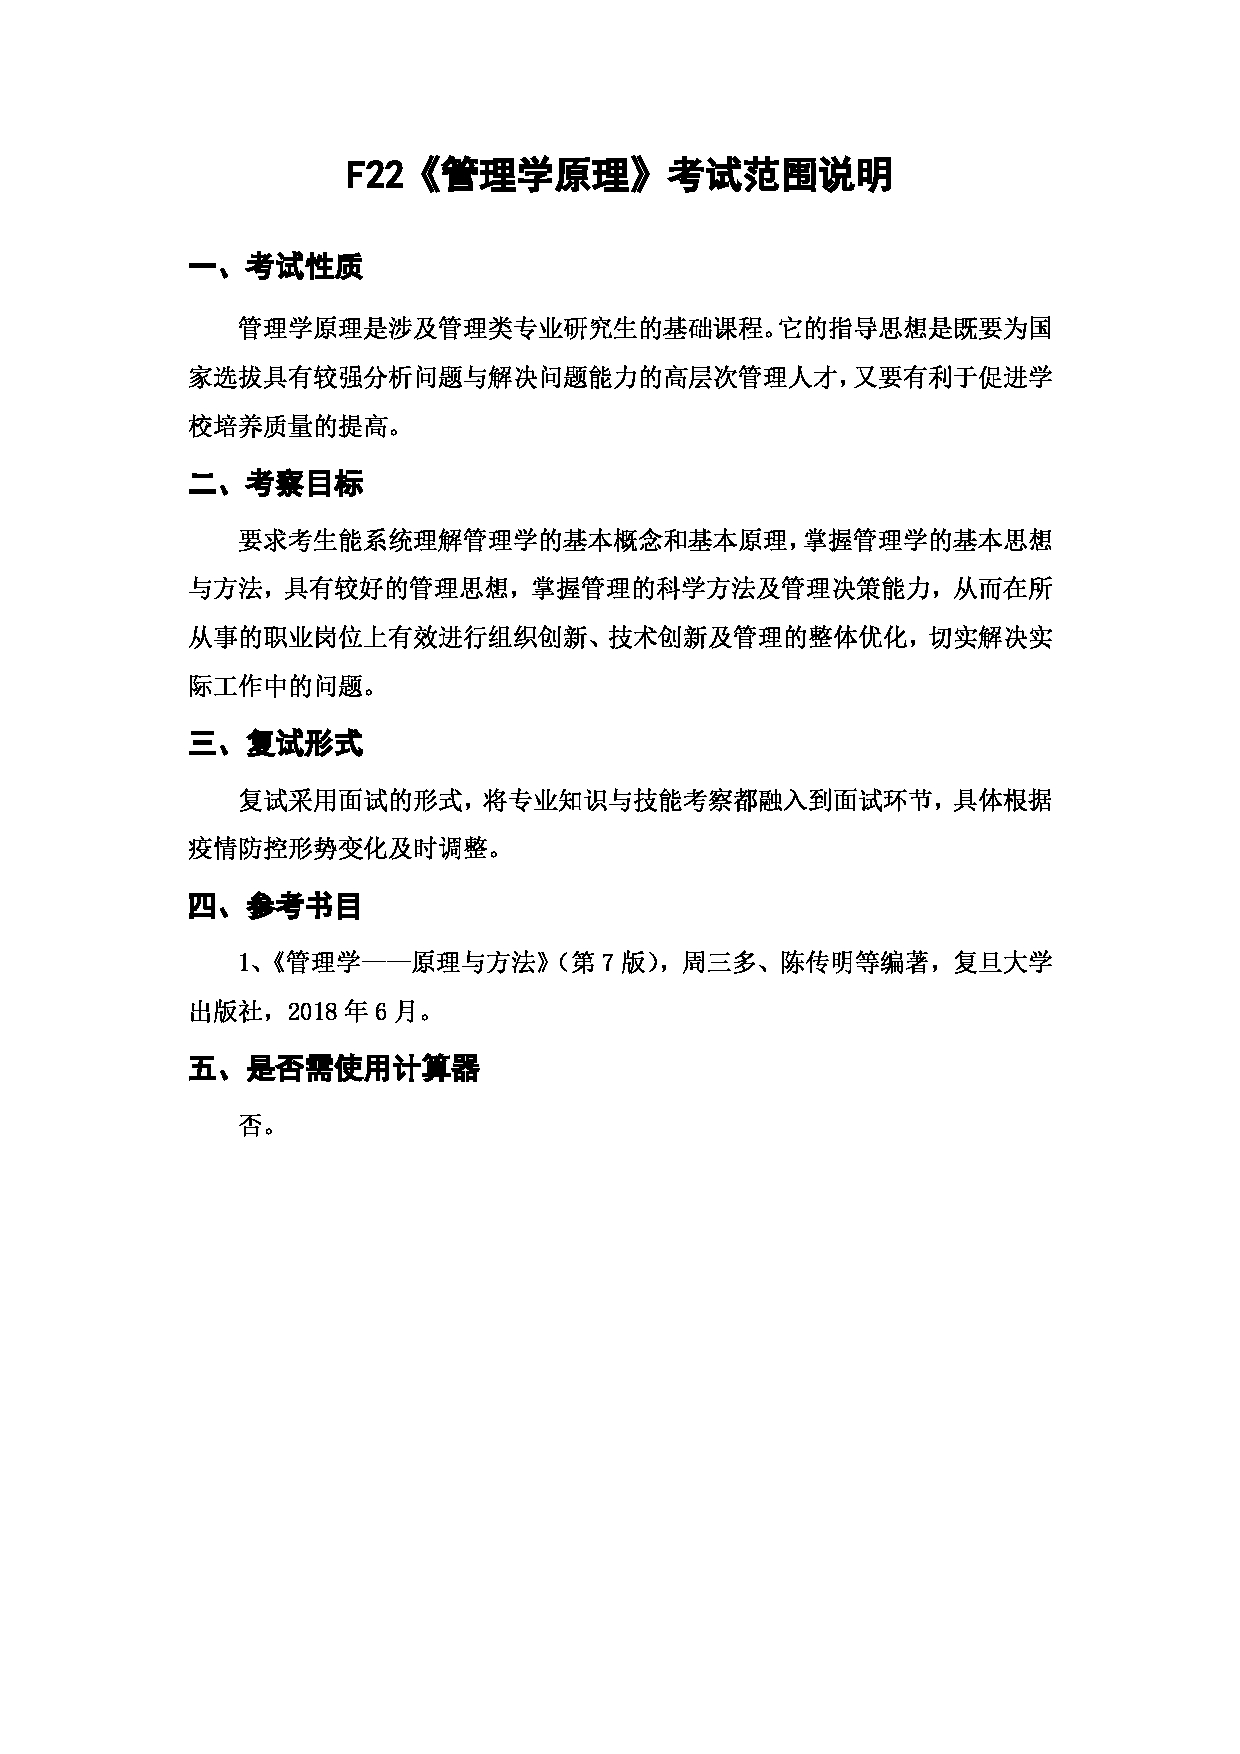 上海海洋大学2023年考研自命题科目 F22《管理学原理》 考试范围第1页